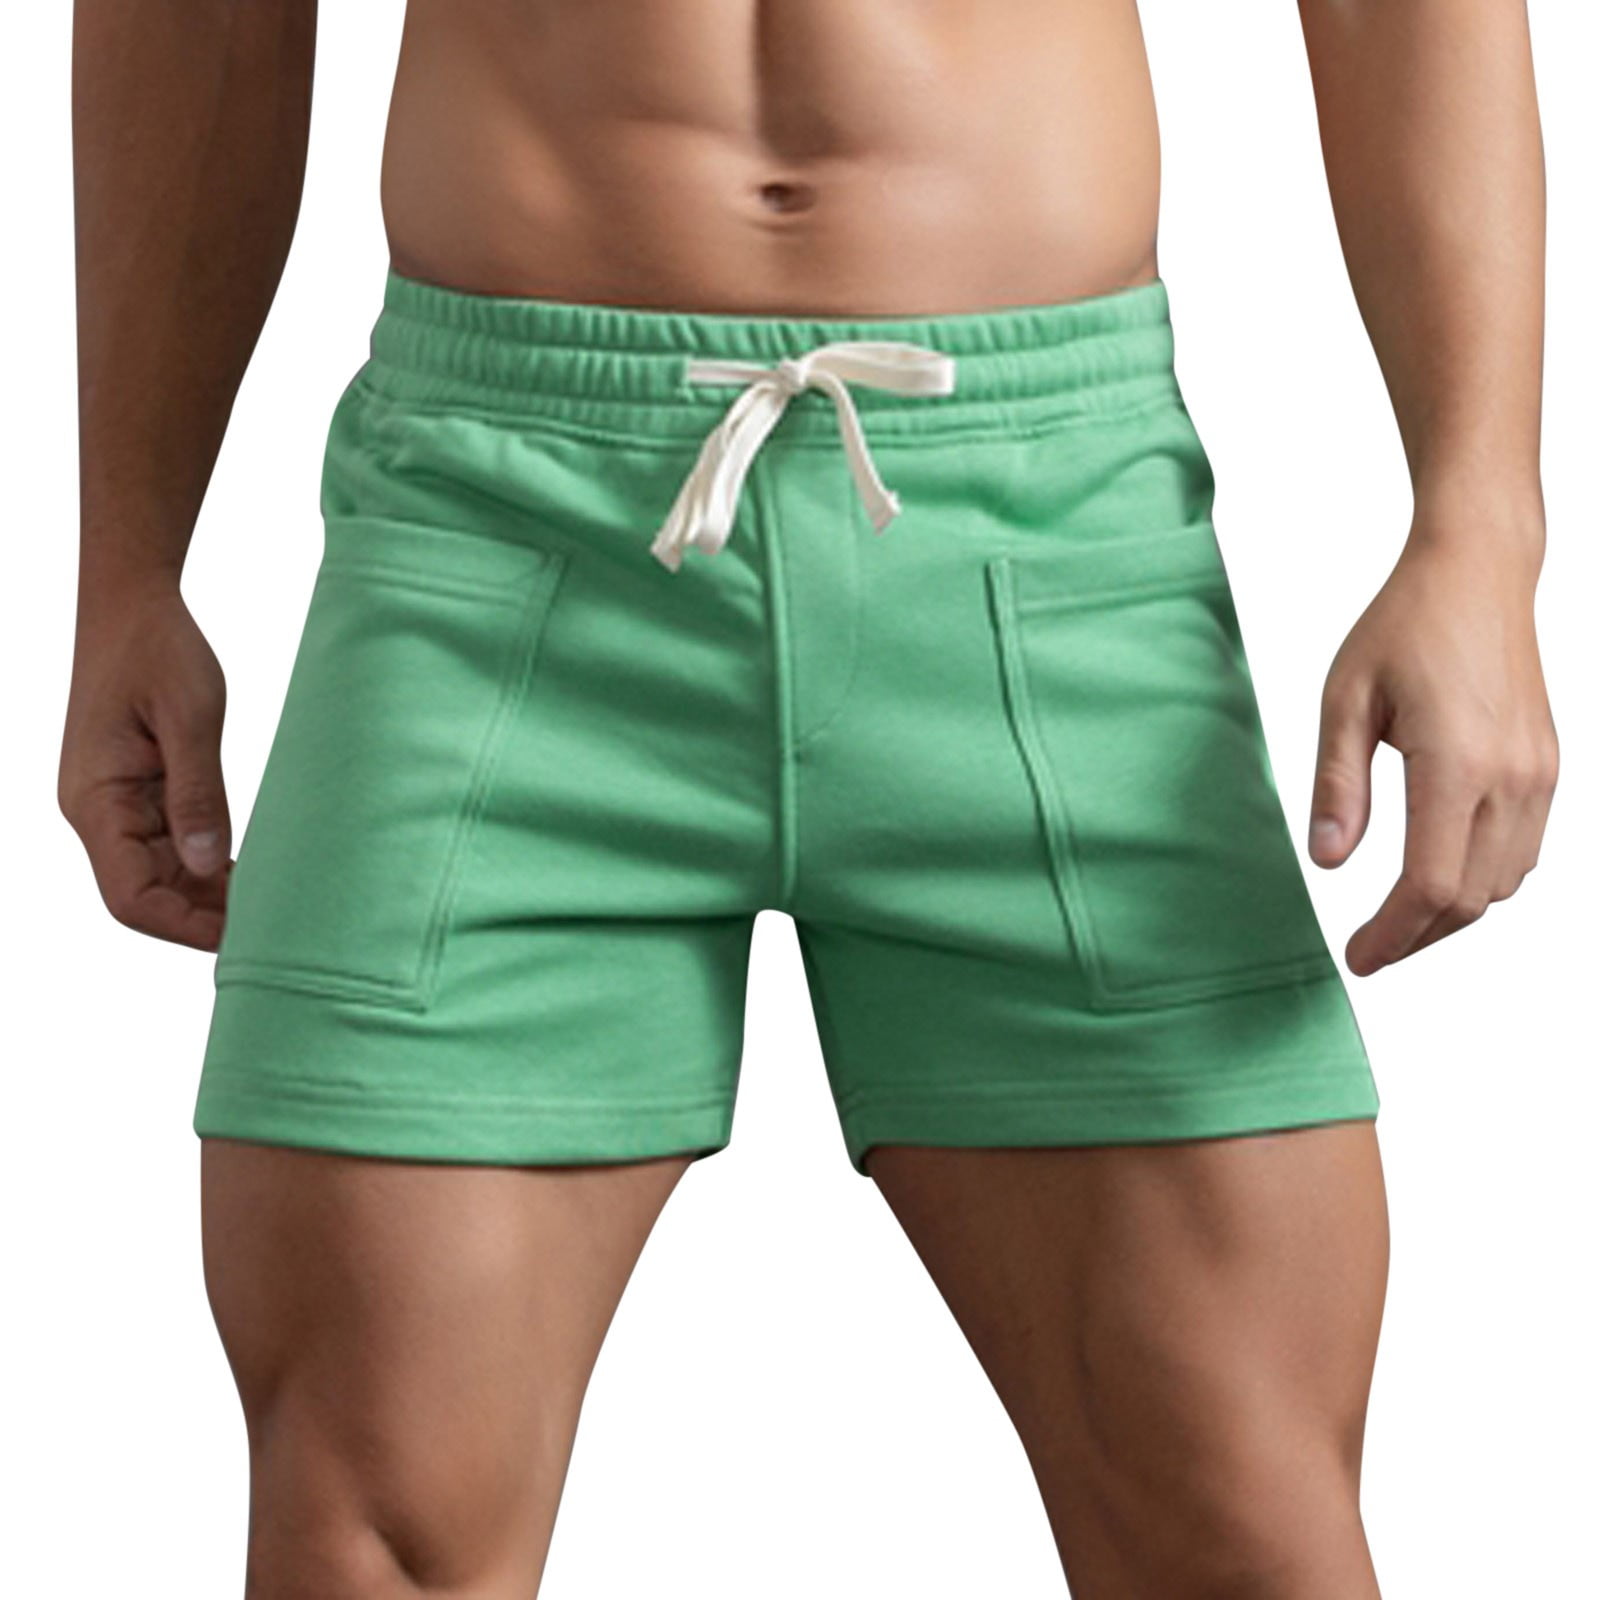 fvwitlyh Gym Shorts for Men 5 Inch Men's Slim-Fit 5 Flat-Front